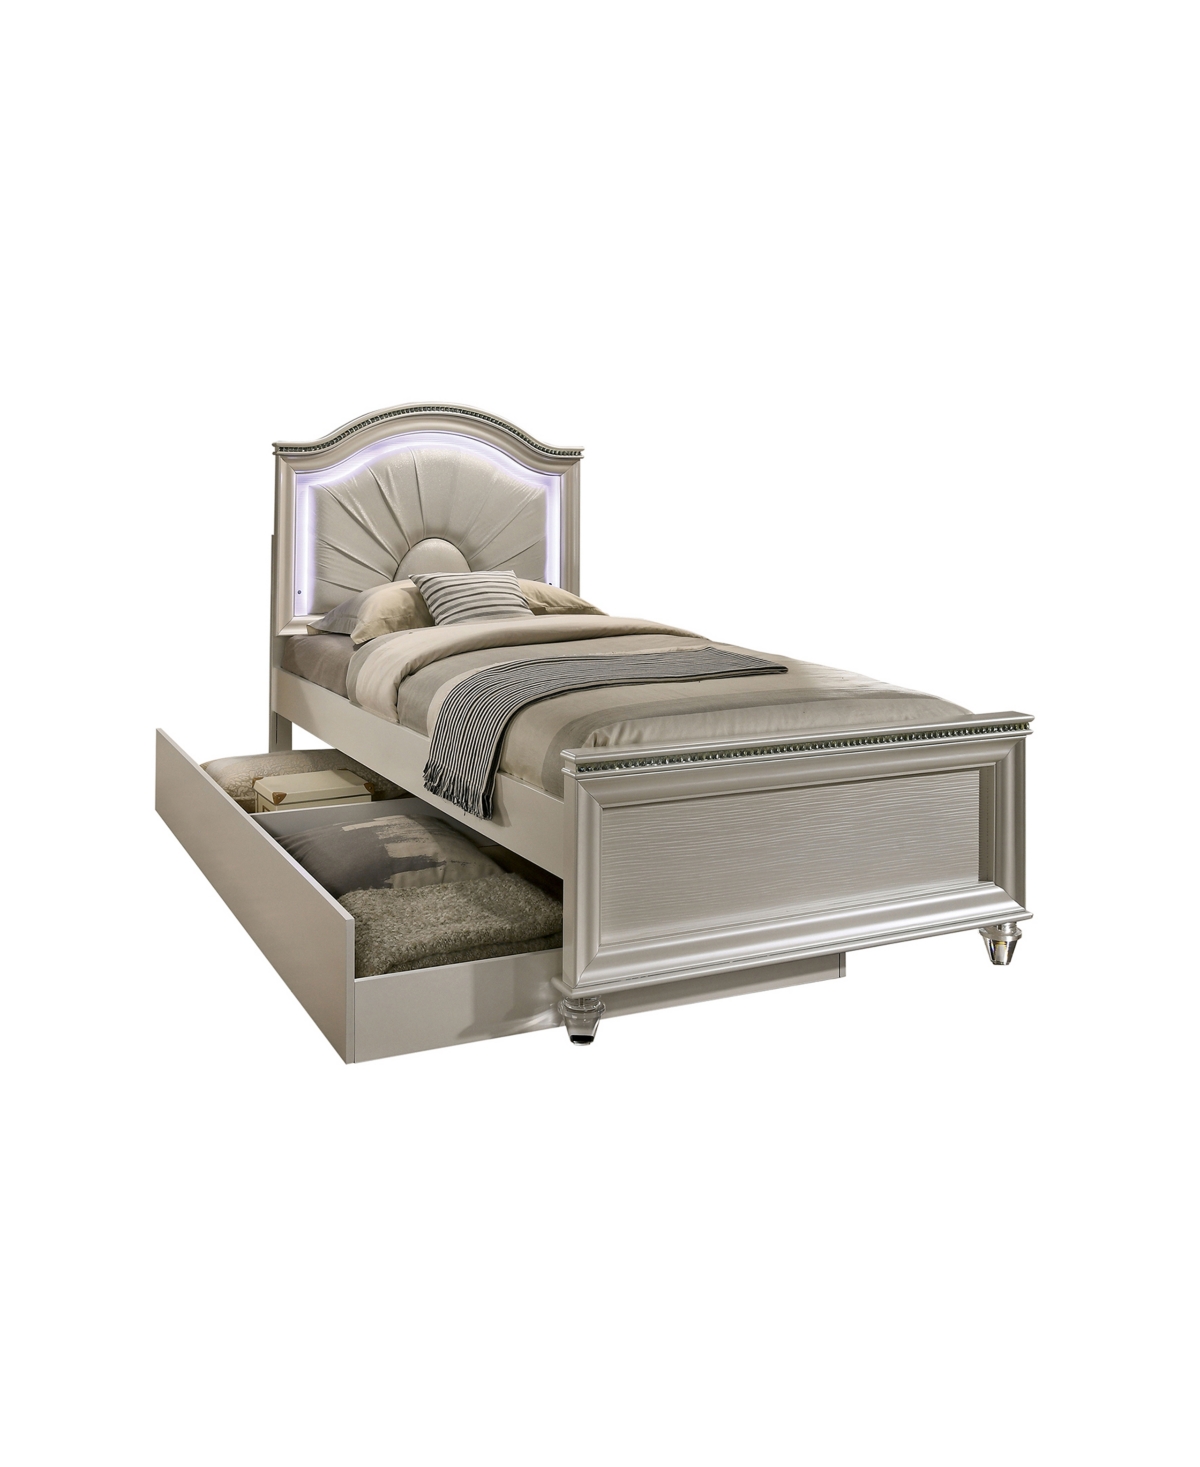 of America Brandan Pearl Twin Panel Bed